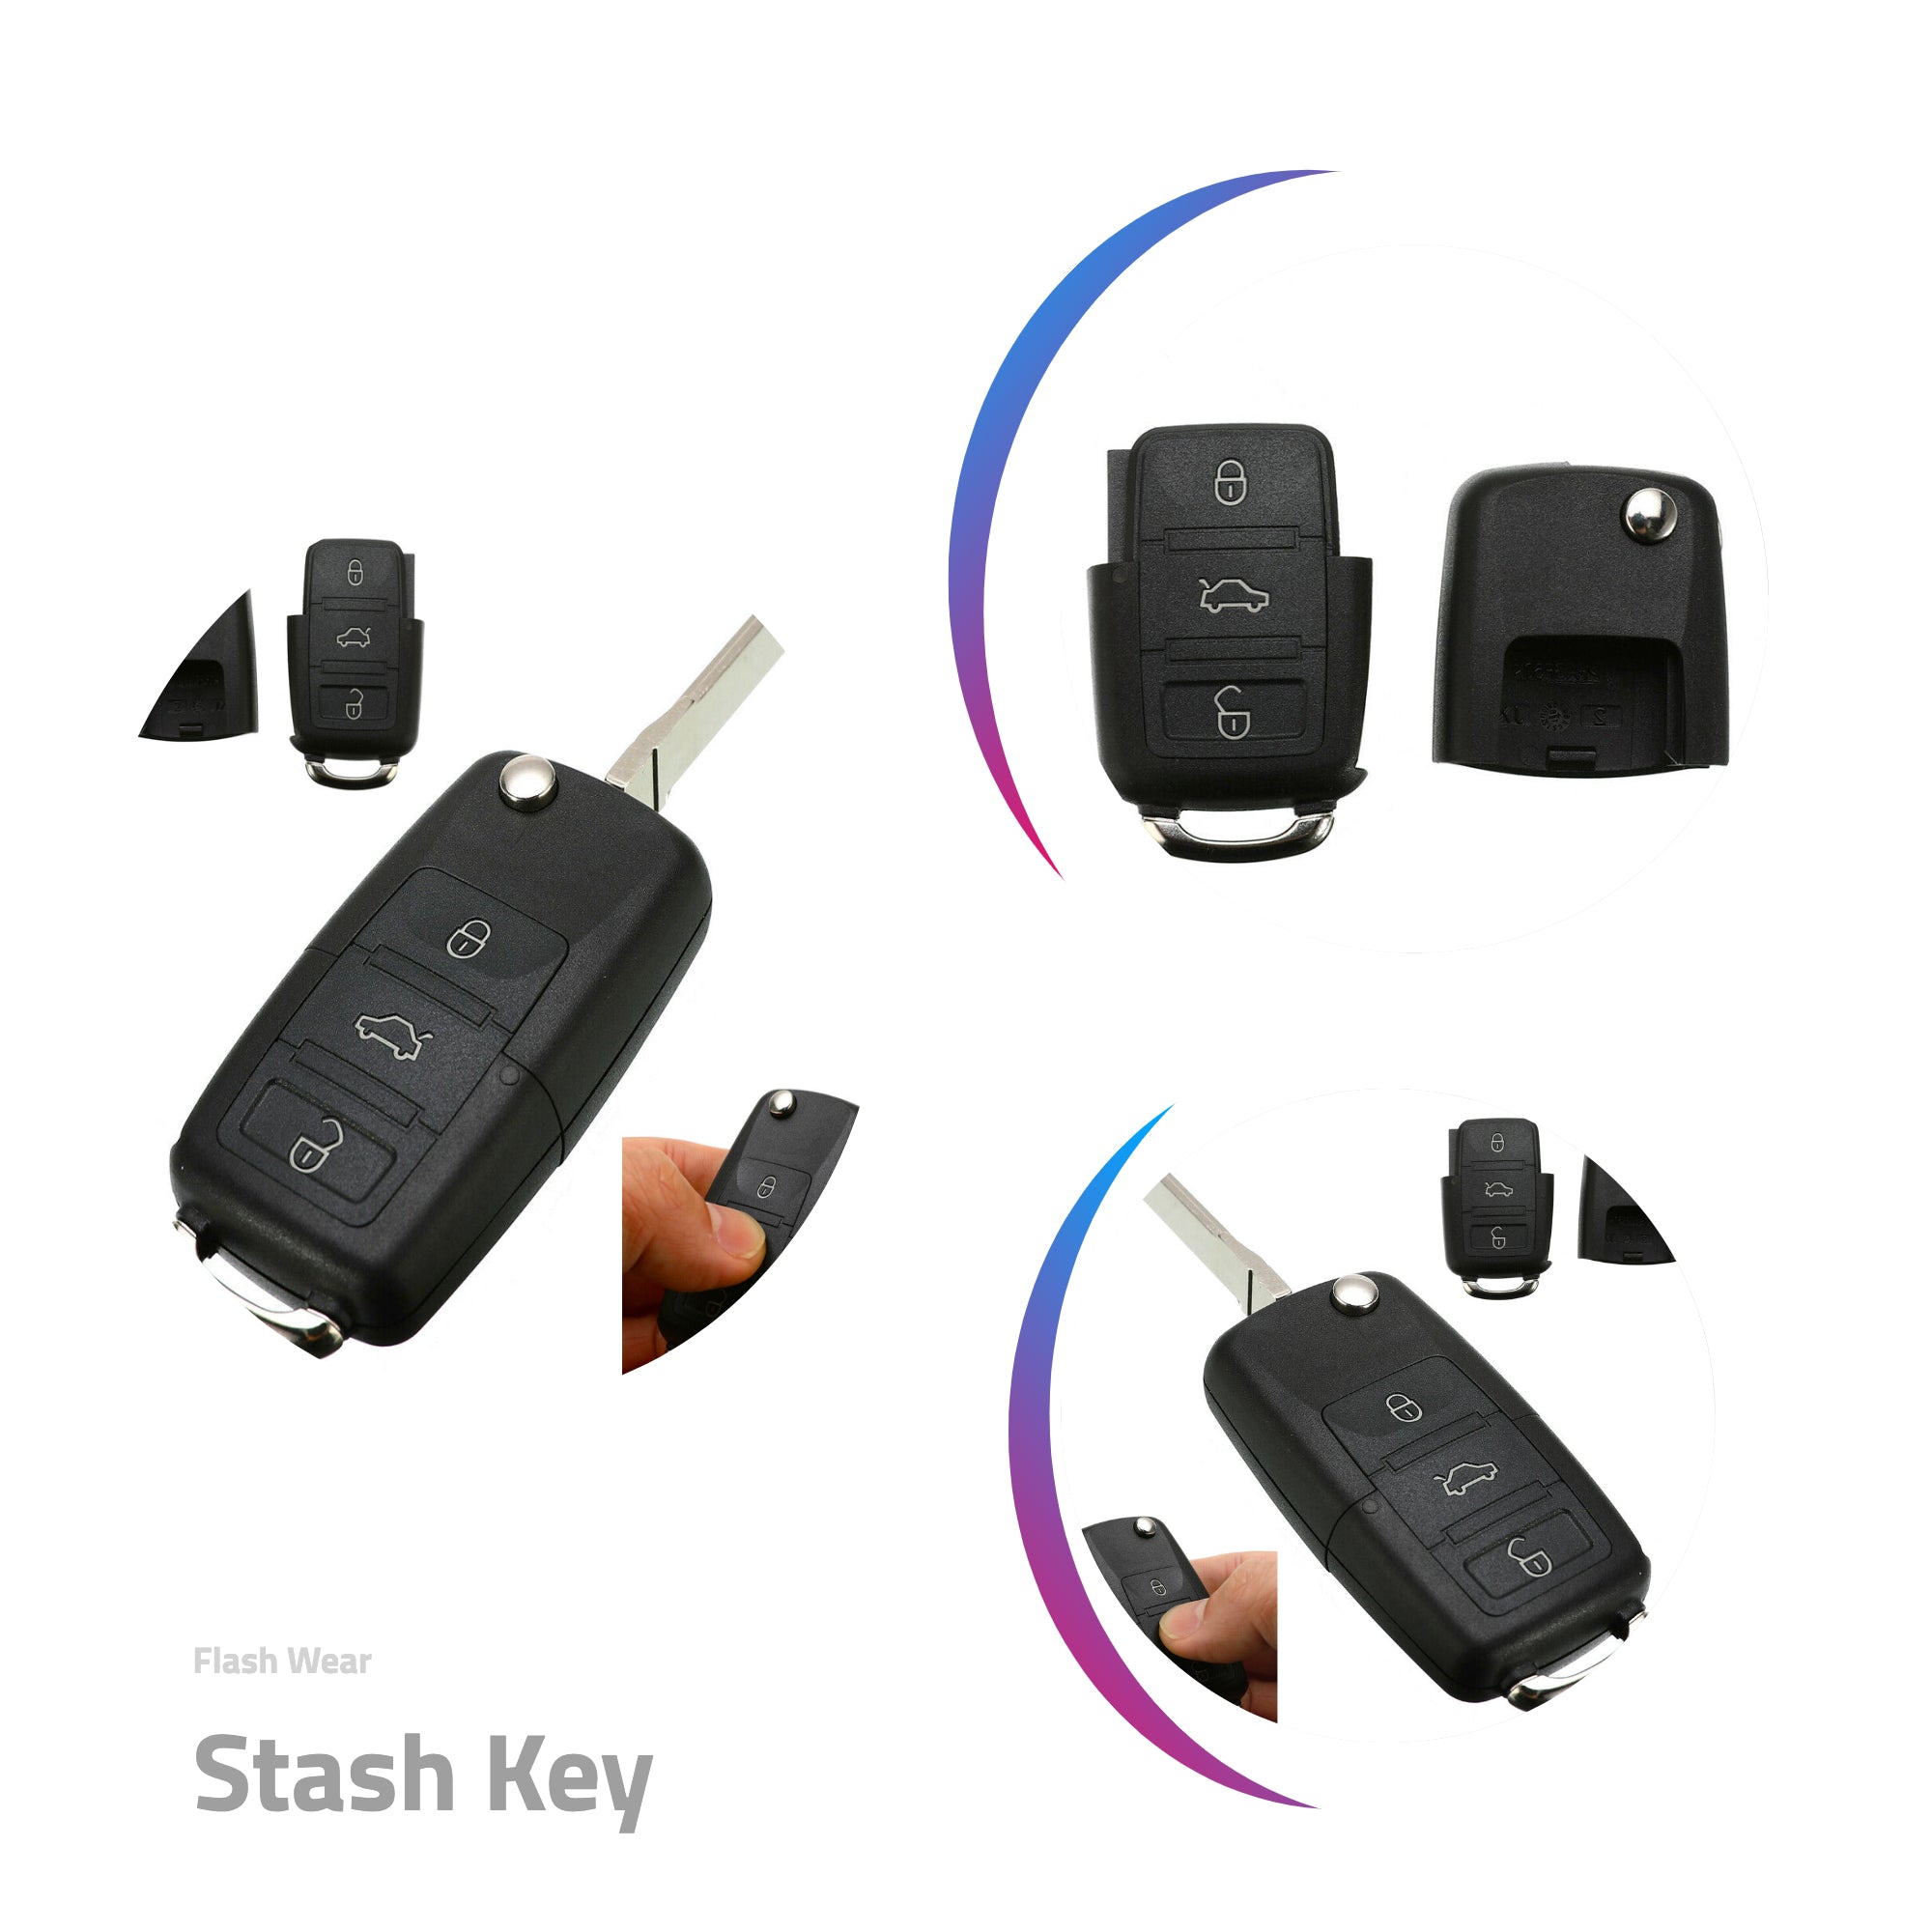 Stash Key